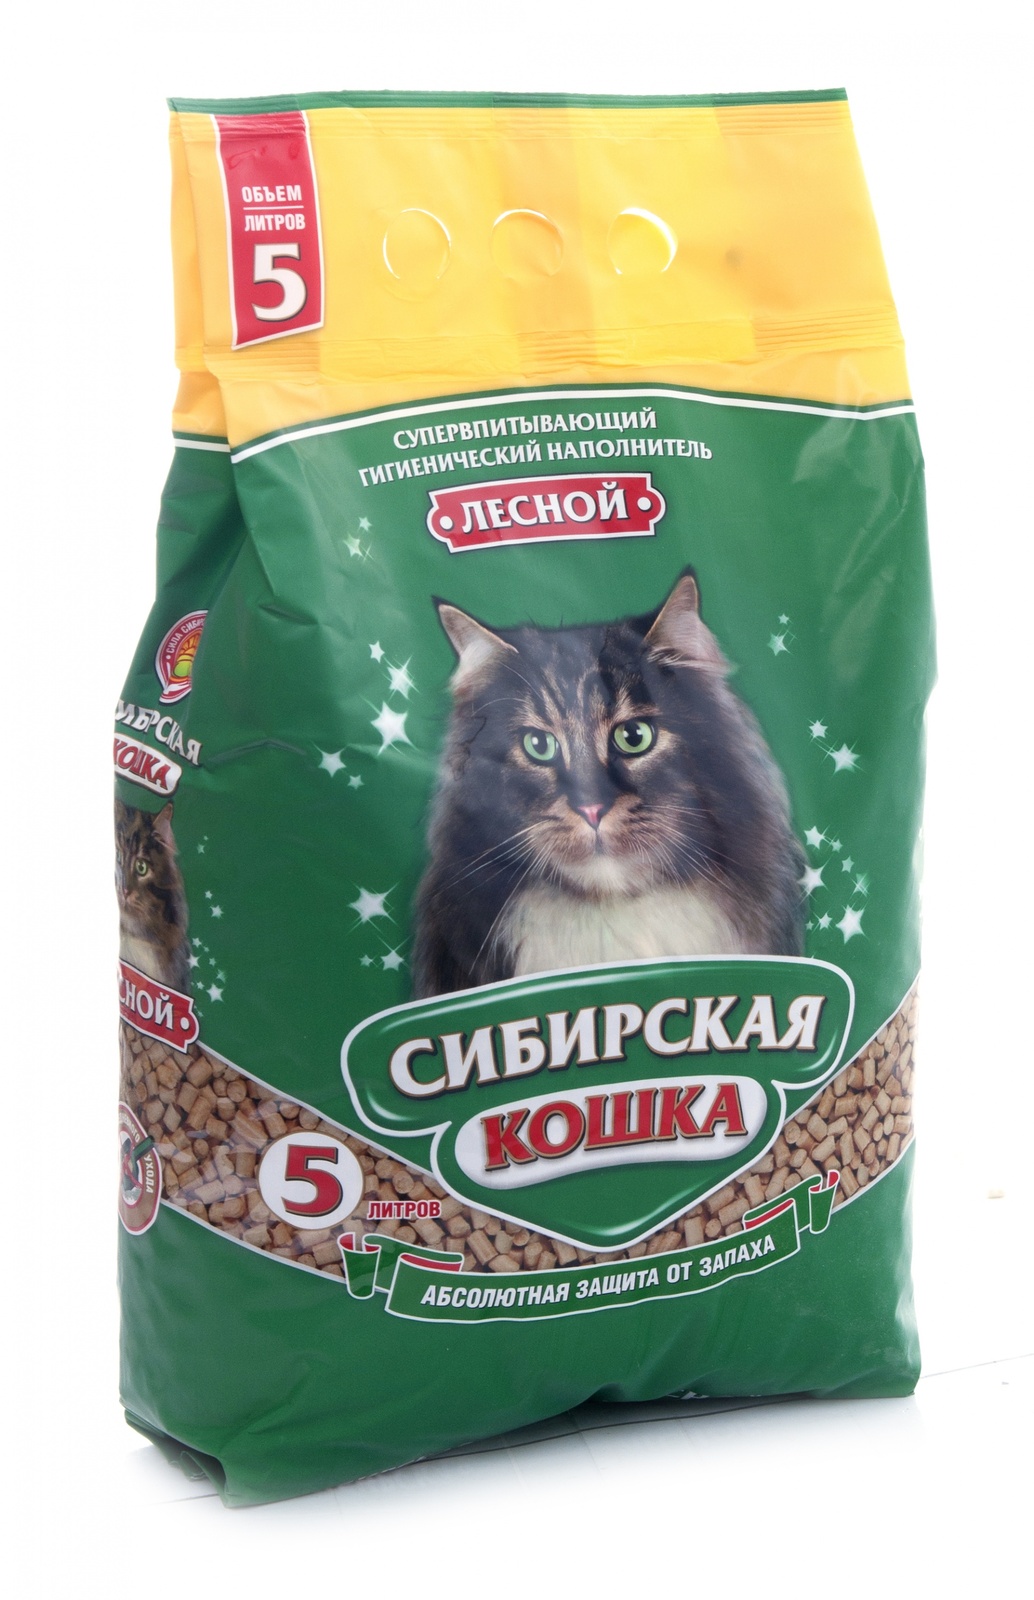 цена Сибирская кошка Сибирская кошка древесный наполнитель Лесной (6,5 кг)